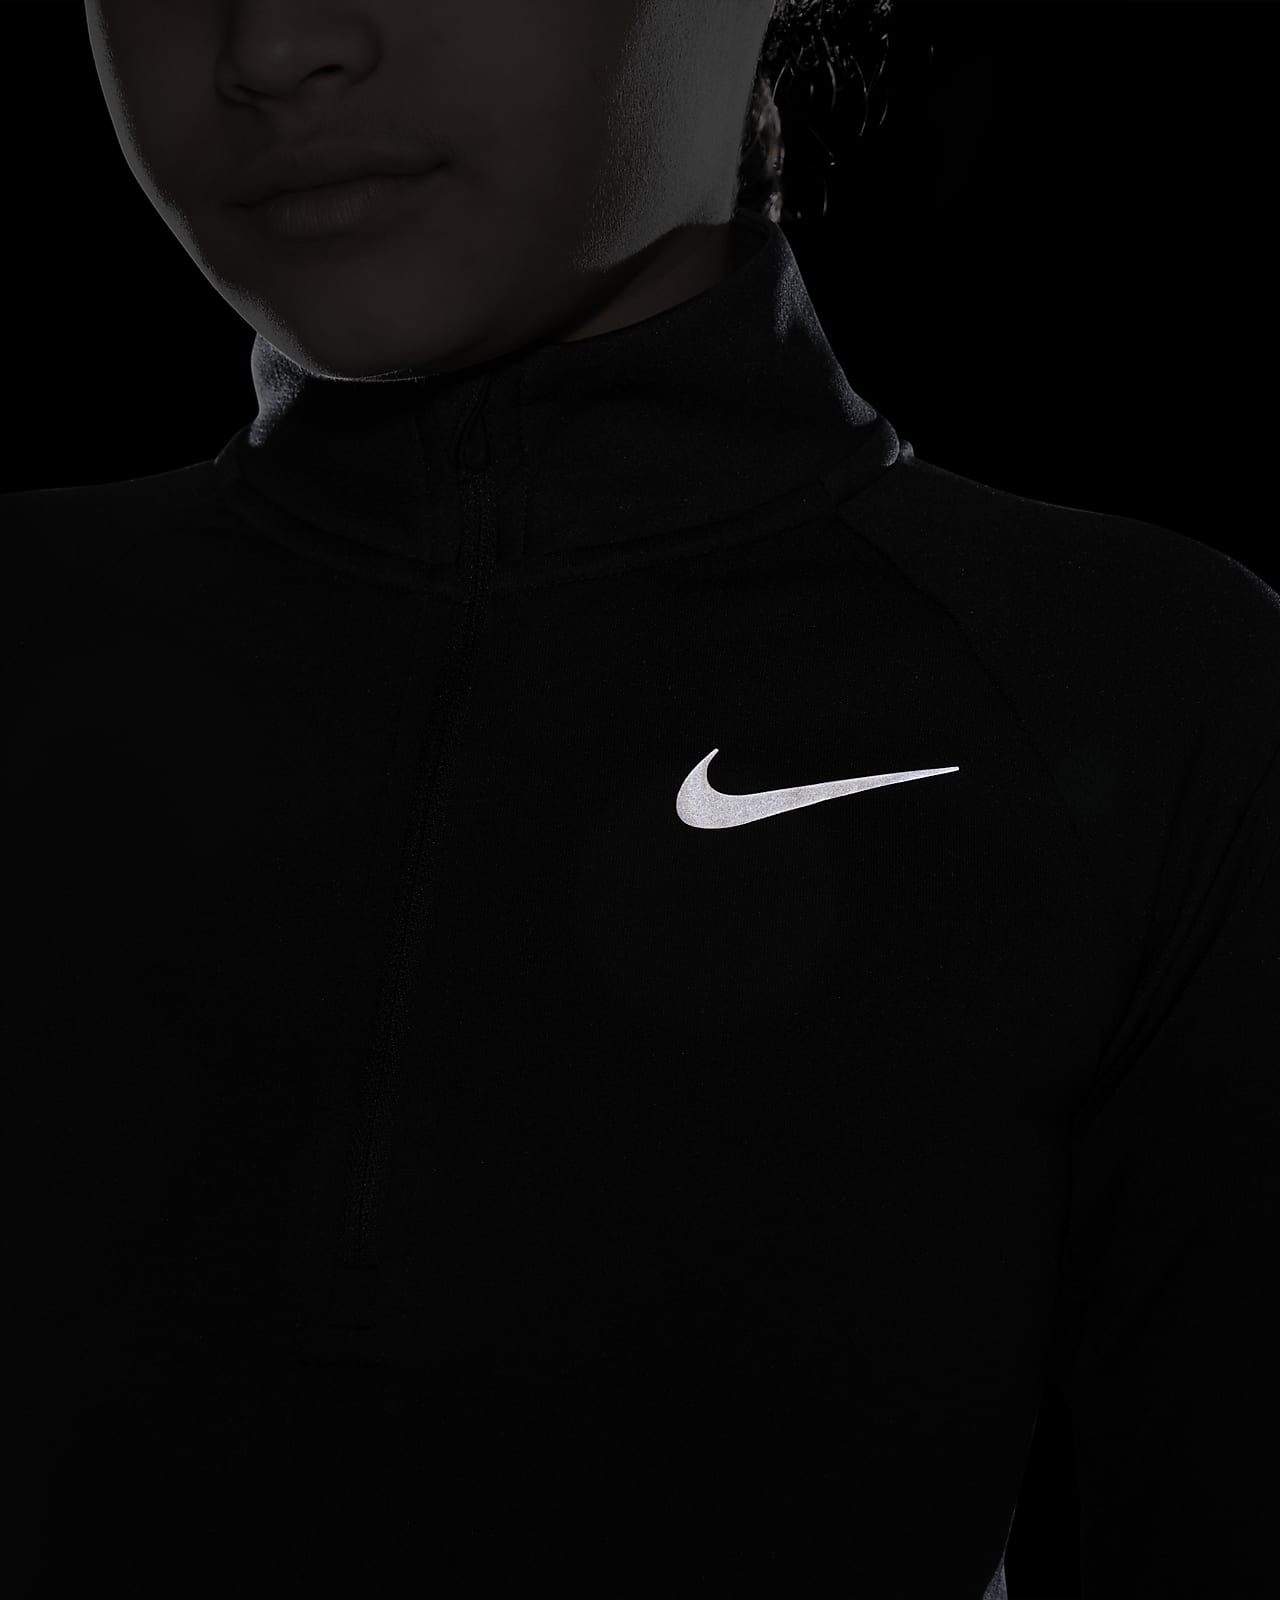 Ladies/ Teen Black Nike Running Vest